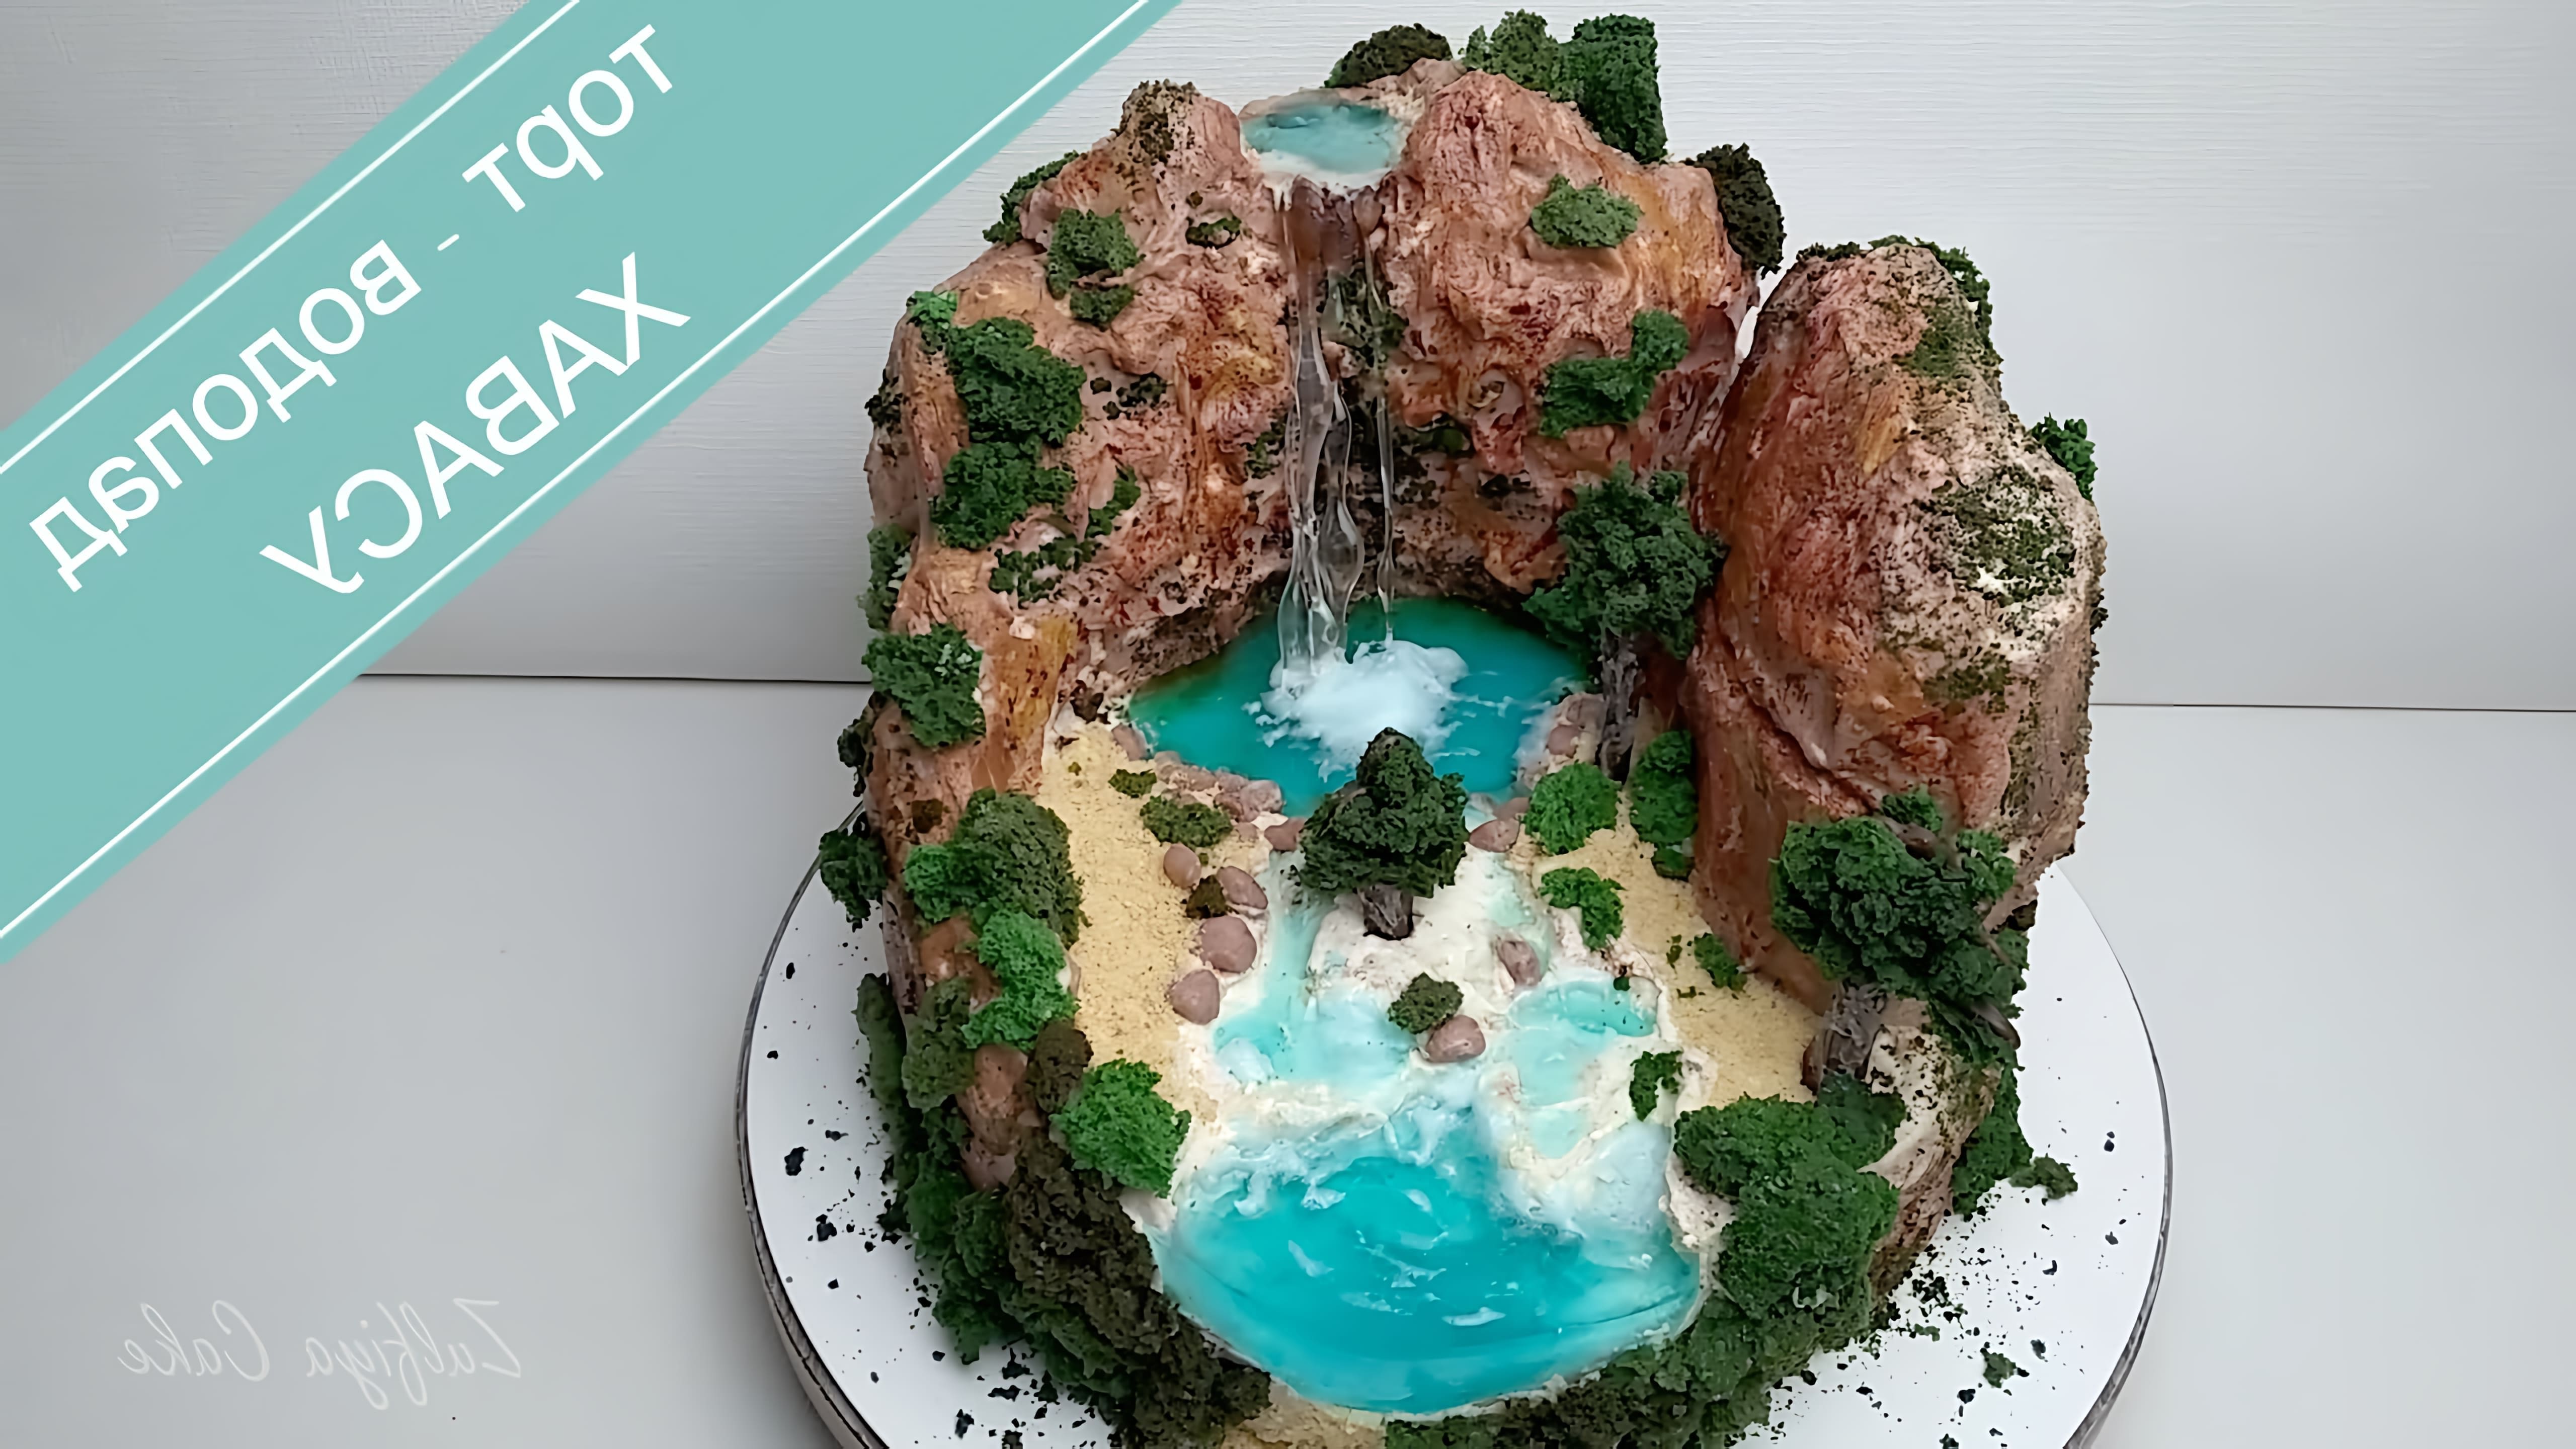 В этом видео демонстрируется процесс создания торта в виде водопада Хавасу, который расположен на территории Гранд-Каньона в штате Аризона, США